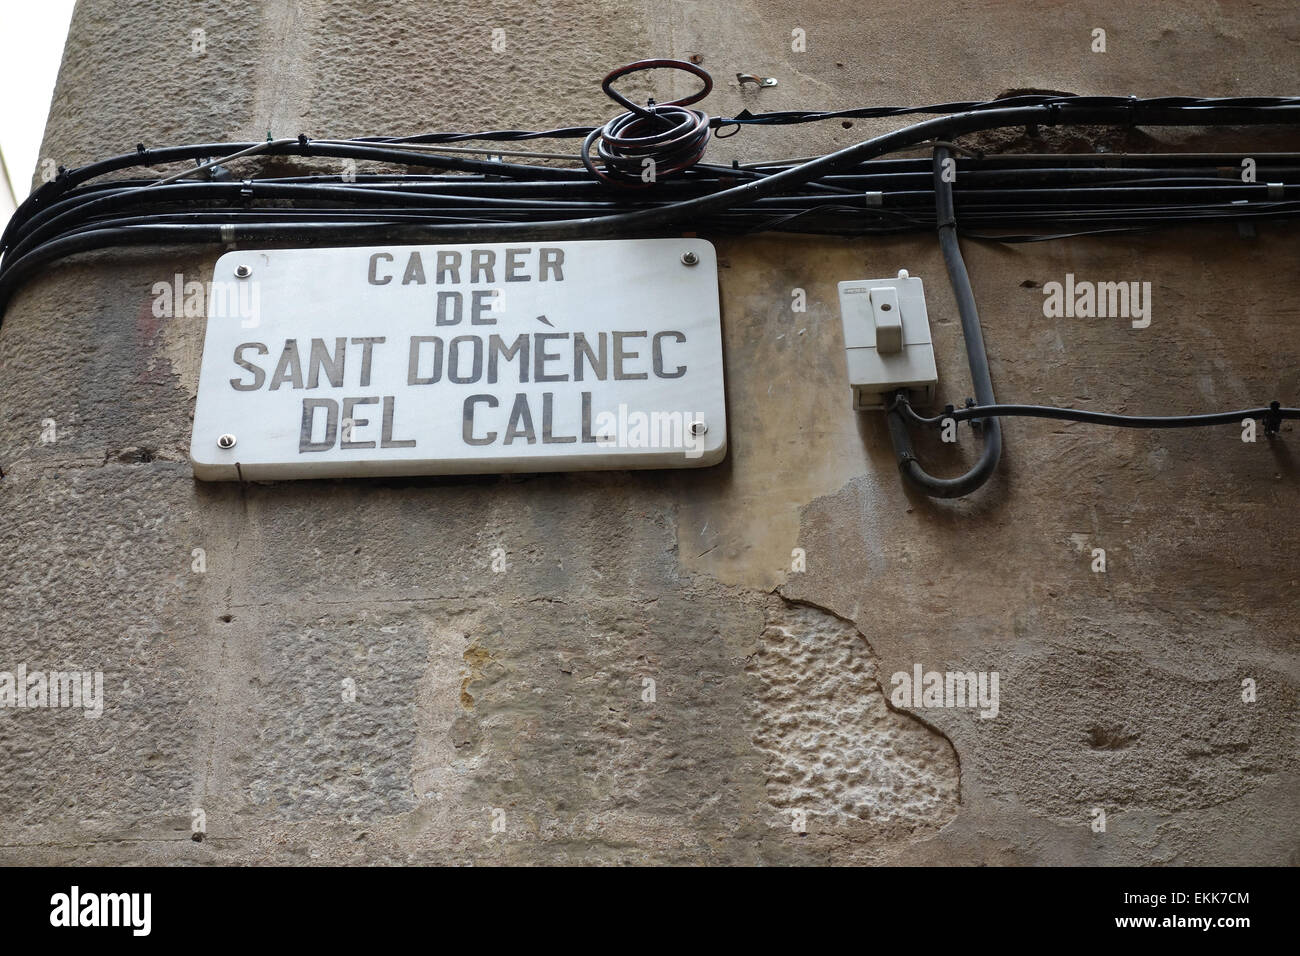 Carrer de Sant Domenec del Call strada segno e cavi a muro nel quartiere Gotico di Barcellona e della Catalogna, Spagna Foto Stock